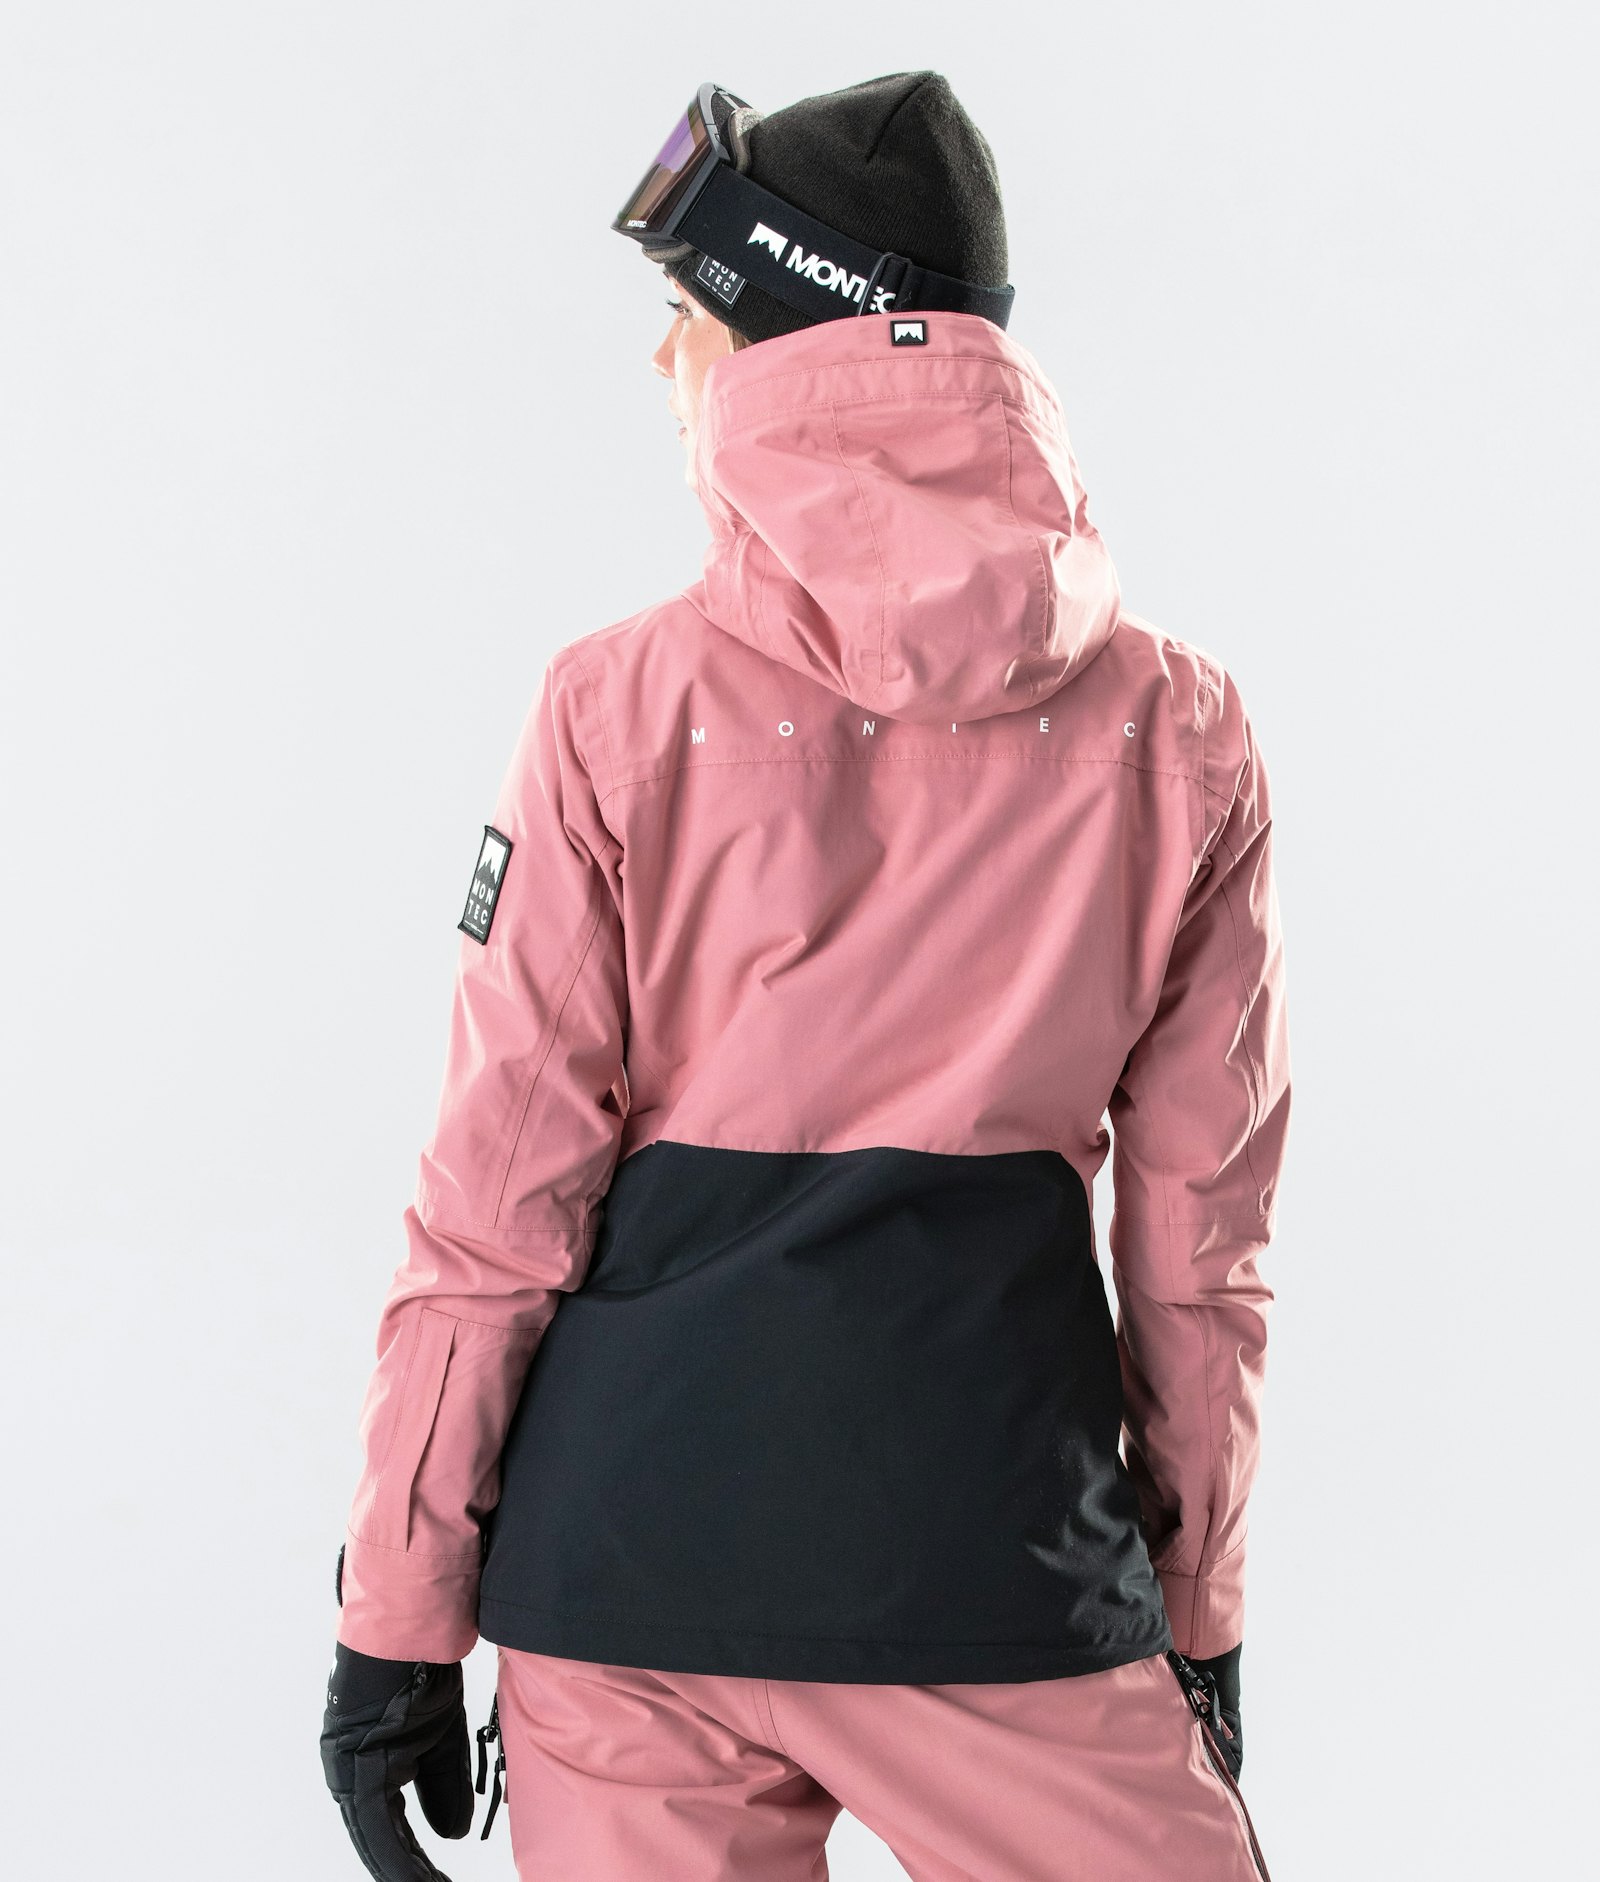 Moss W 2020 Ski jas Dames Pink/Black